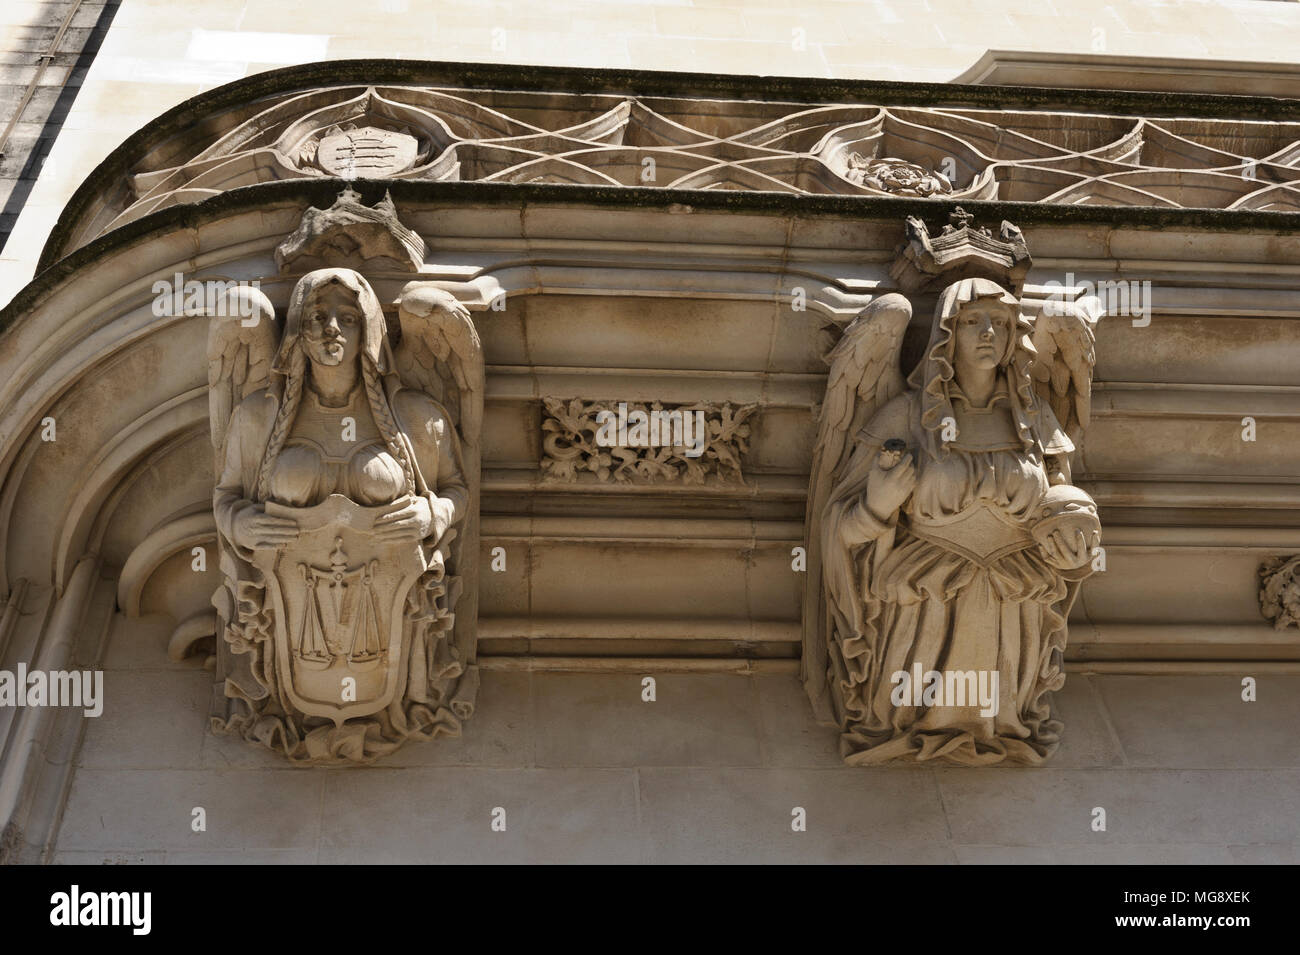 Sculptures sur le mur extérieur de la Cour suprême de justice, Londres, Angleterre, Royaume-Uni Banque D'Images